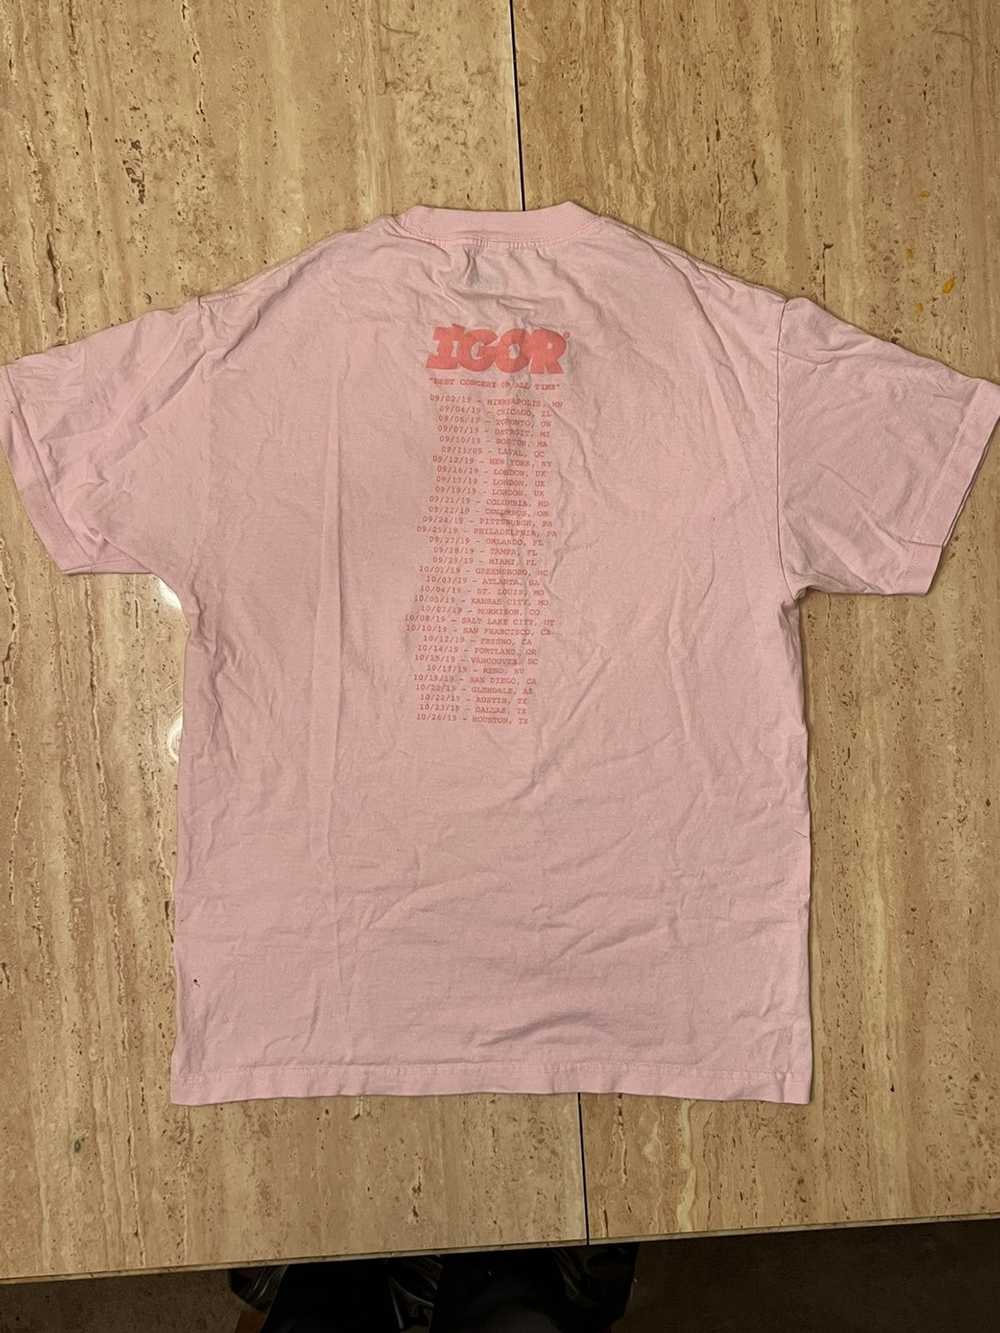 Tyler The Creator Pink Igor Tour Shirt Size Large - Gem